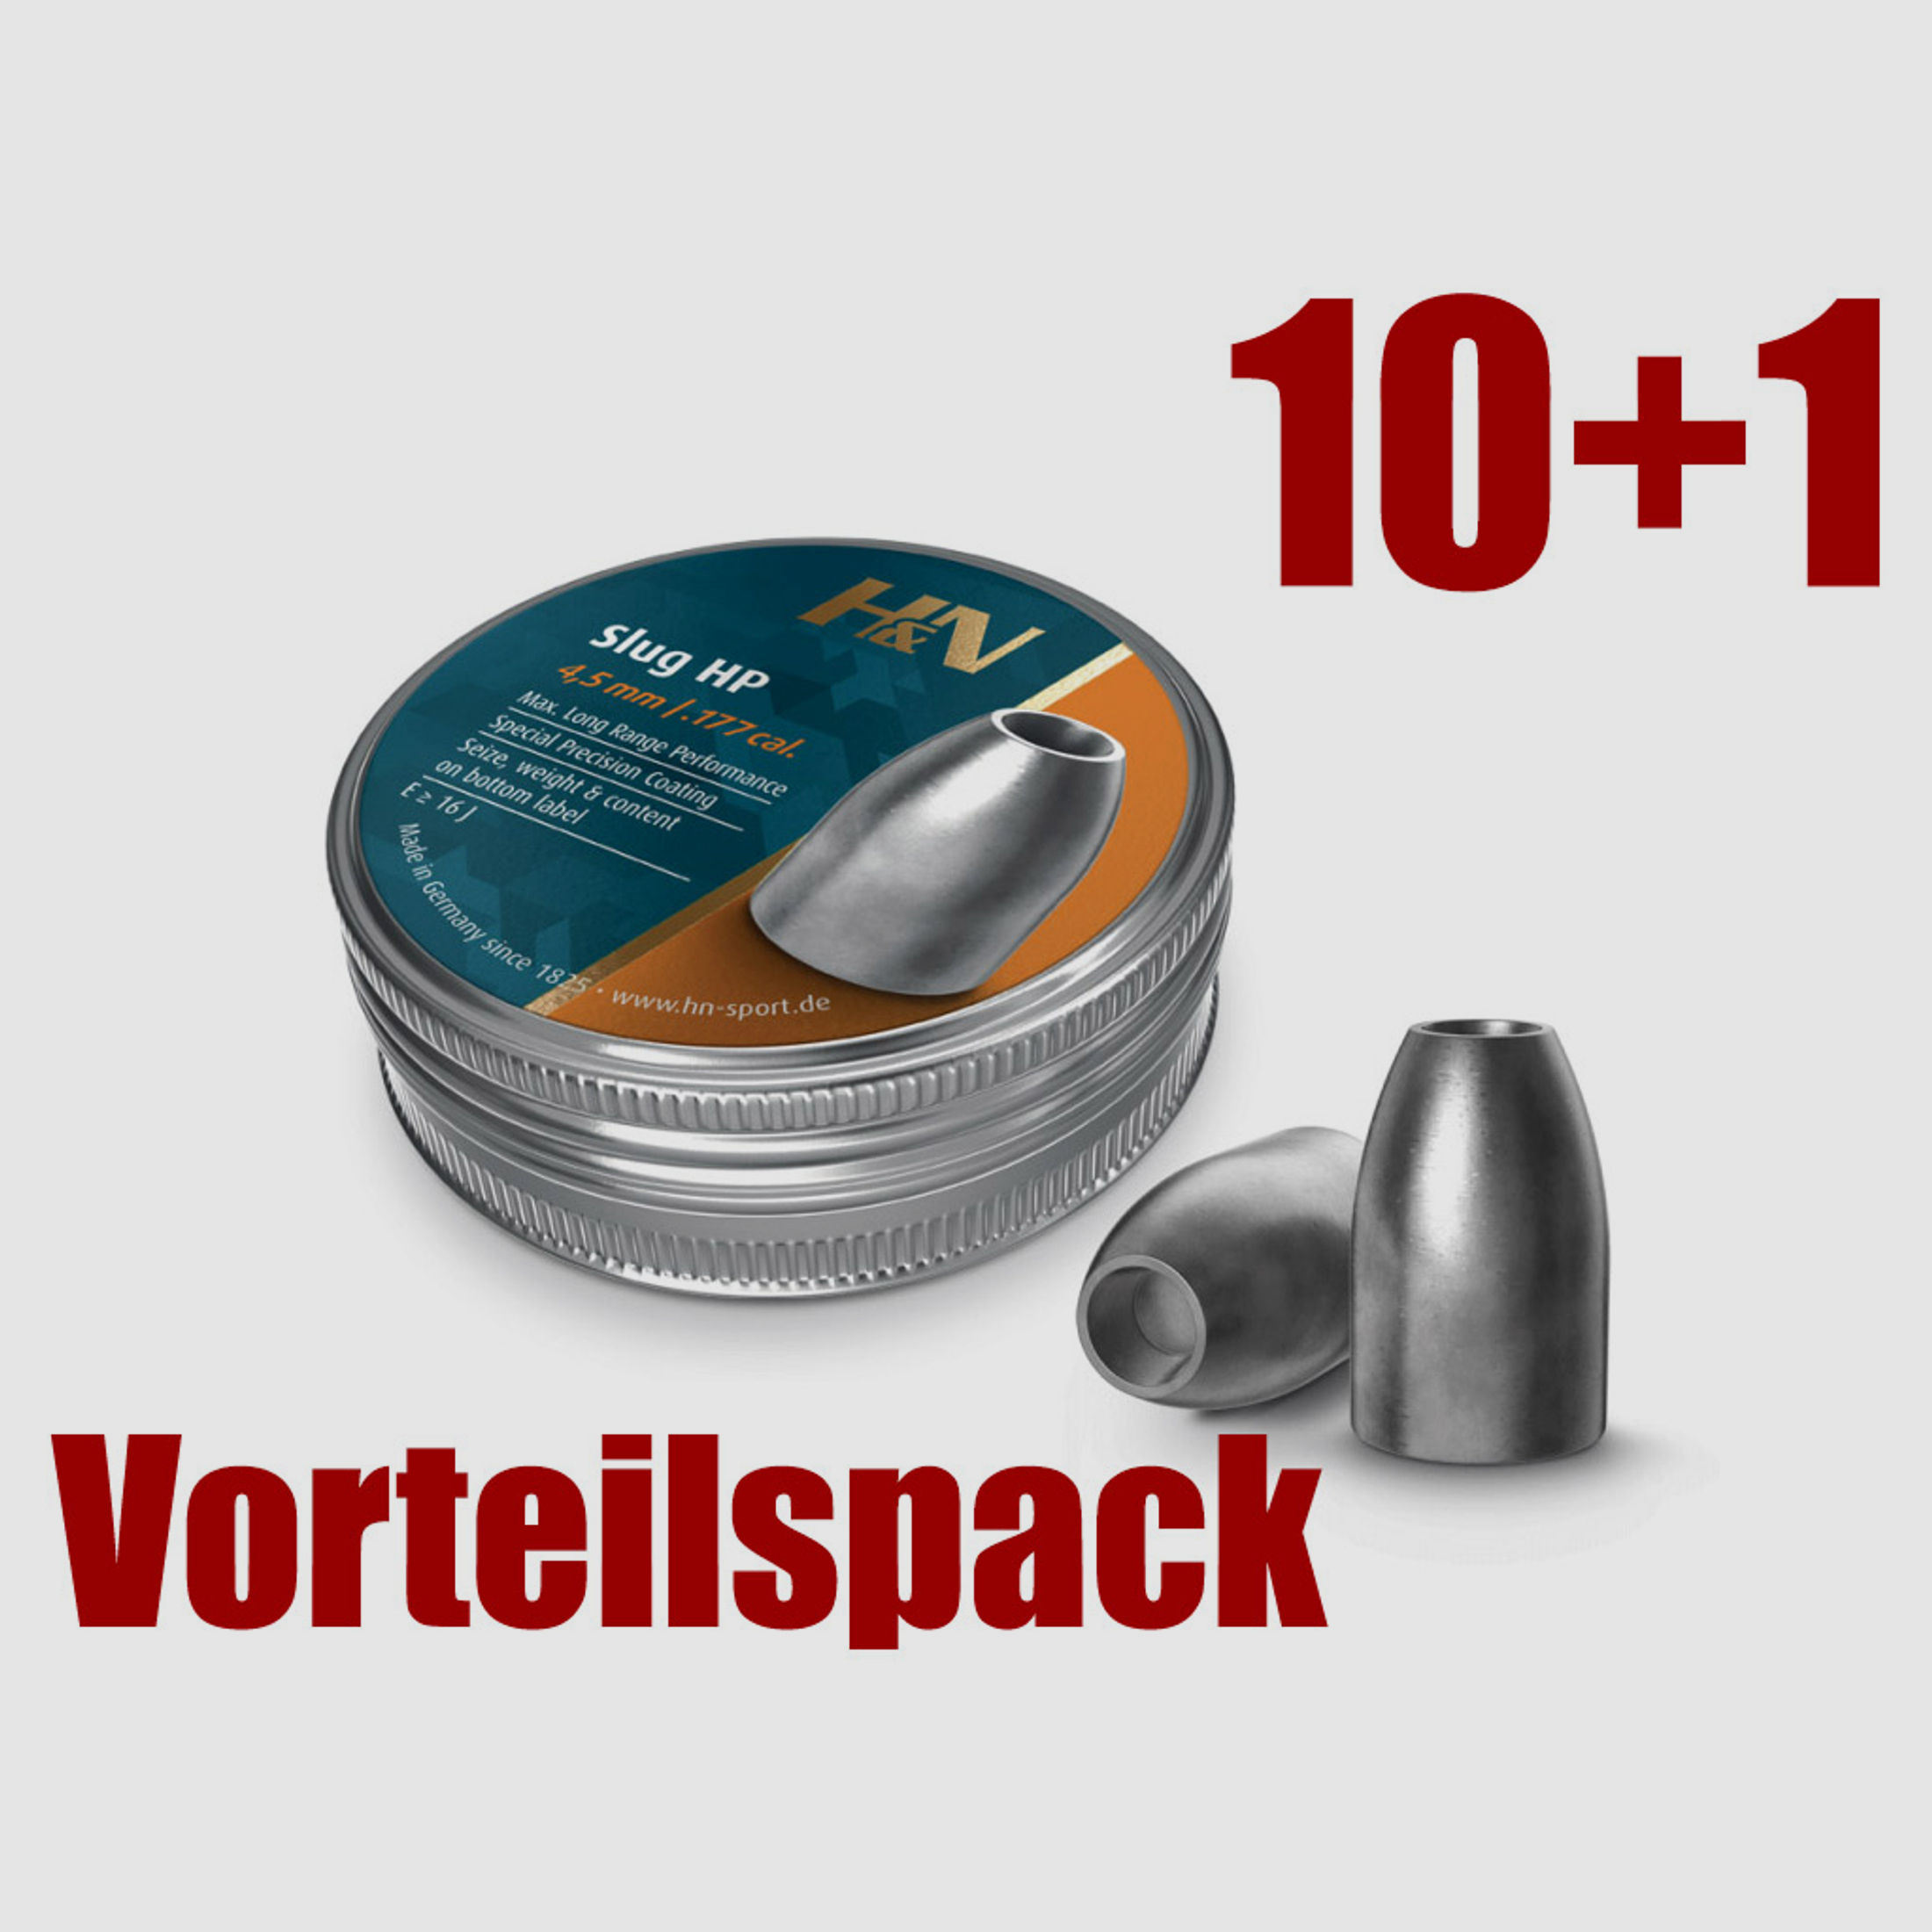 Vorteilspack 10+1 Hohlspitz Diabolos H&N Slug HP Kaliber 4,51 mm 1,30 g 20 gr glatt 11 x 250 StĂĽck